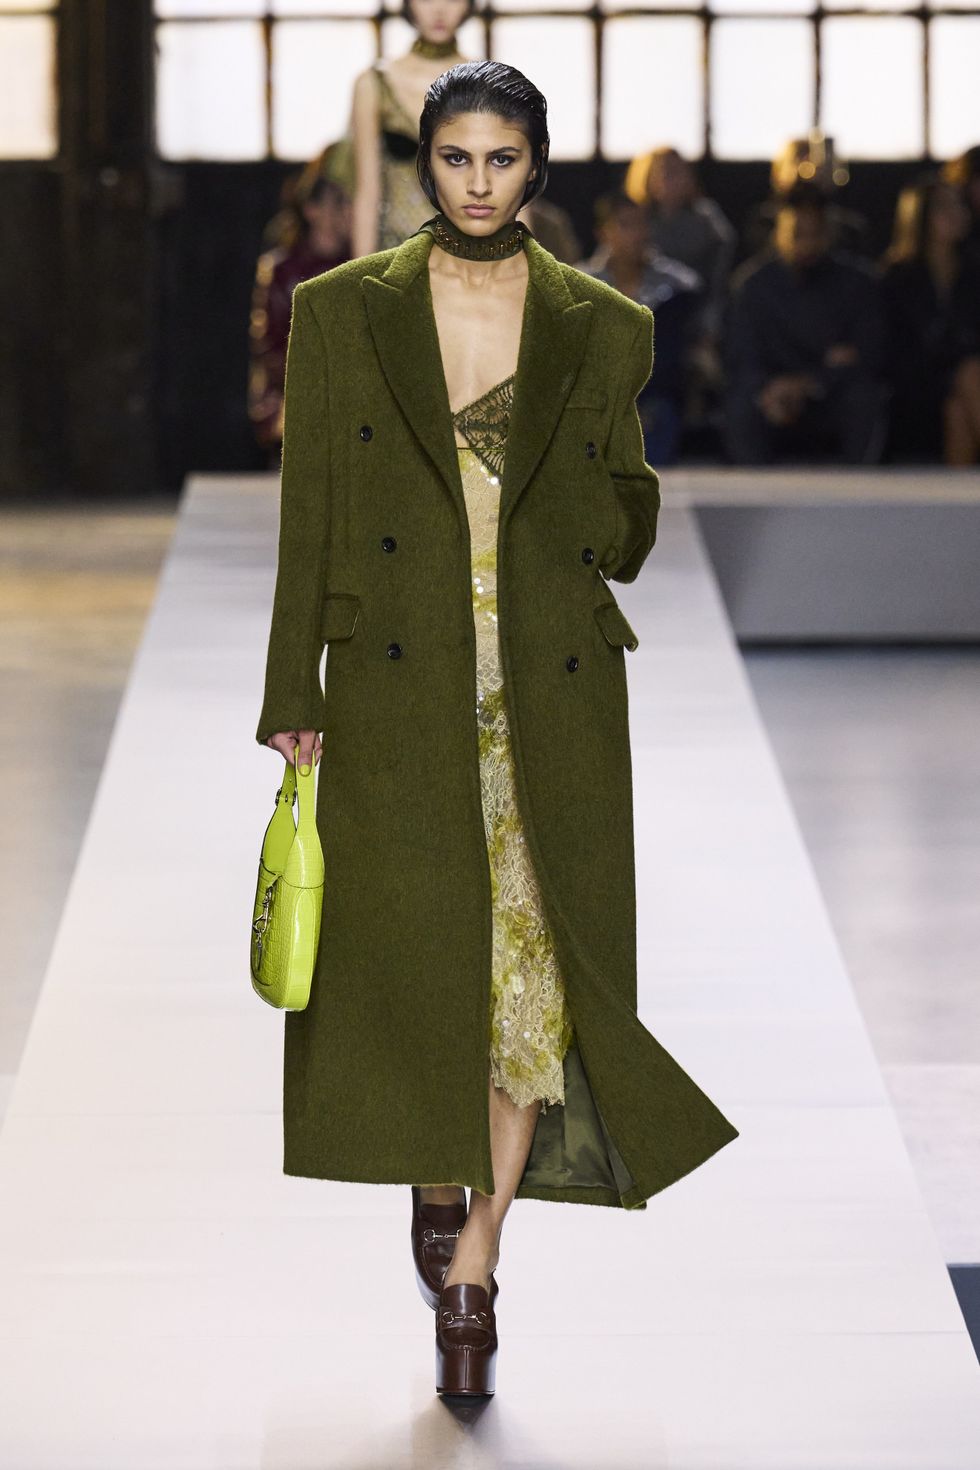 Punk-inspired glamour as Gigi Hadid walks Versace's Milan Fashion